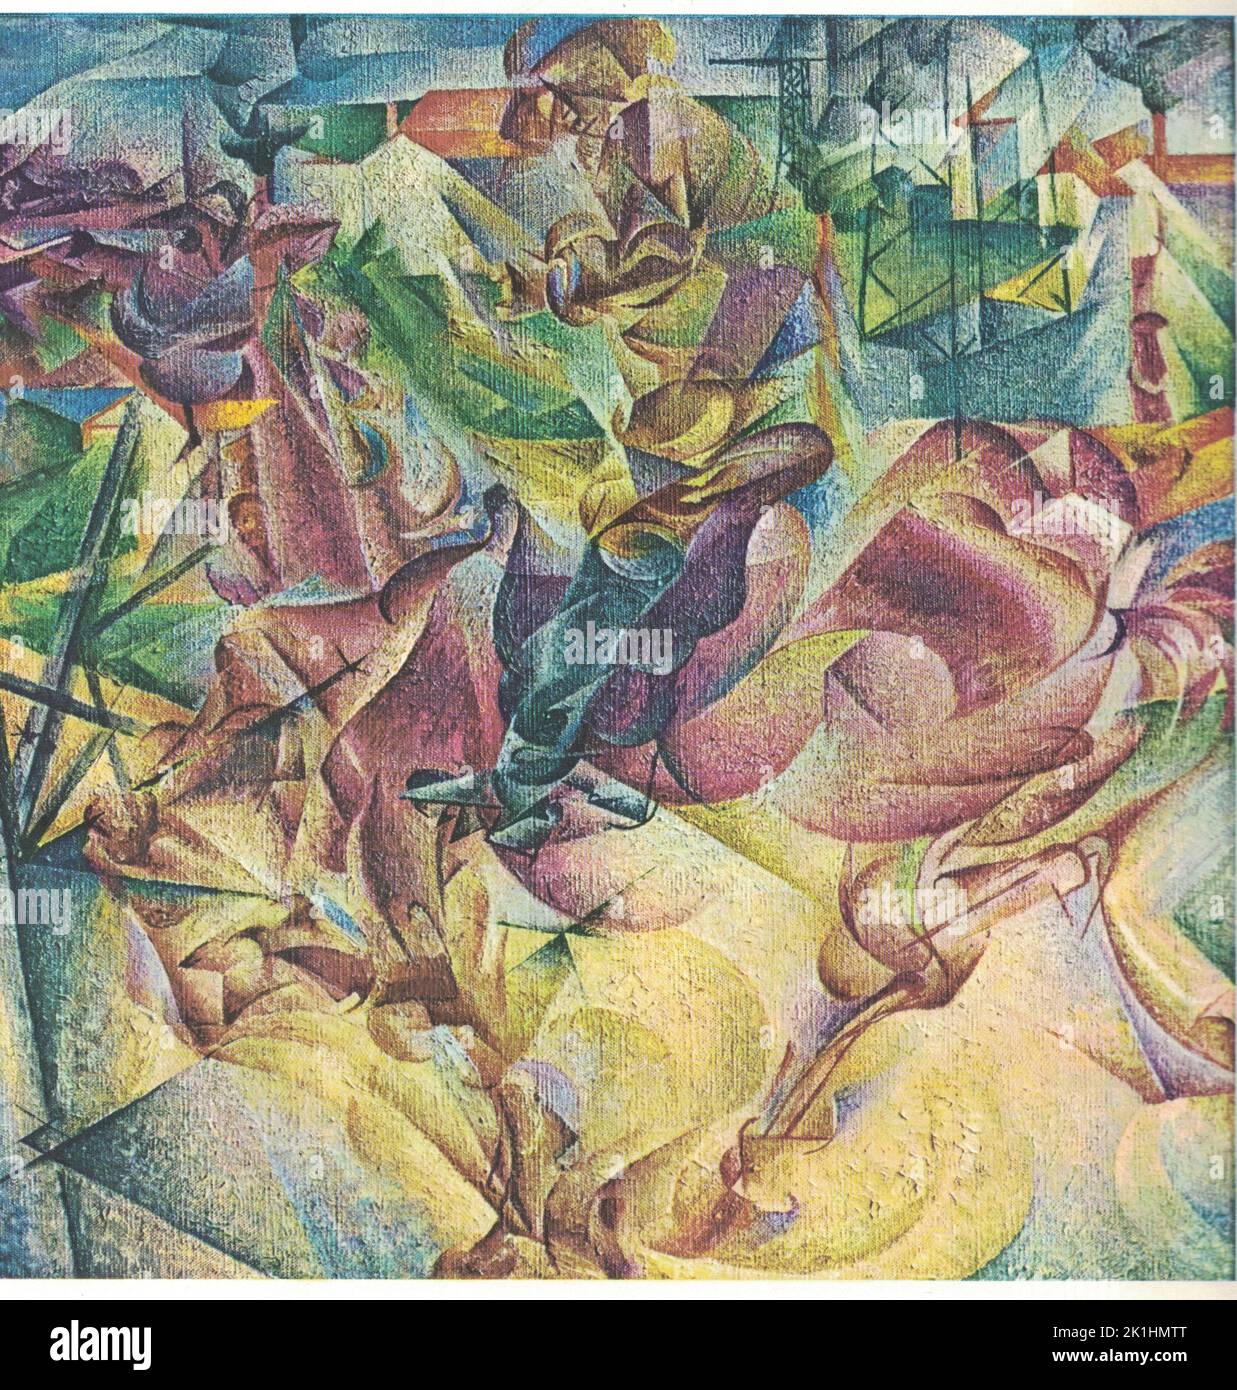 Elasticità, 1912, olio su tela. Dipinto di Umberto Boccioni. Umberto Boccioni (19 ottobre 1882 – 17 agosto 1916) è stato un . Aiutò a plasmare l'estetica rivoluzionaria del movimento Futurismo come una delle sue figure principali. Nonostante la sua breve vita, il suo approccio al dinamismo della forma e la decostruzione di massa solida ha guidato artisti molto tempo dopo la sua morte. Le sue opere sono tenute da molti musei d'arte pubblici, e nel 1988 il Metropolitan Museum of Art di New York ha organizzato una retrospettiva di 100 pezzi. Foto Stock